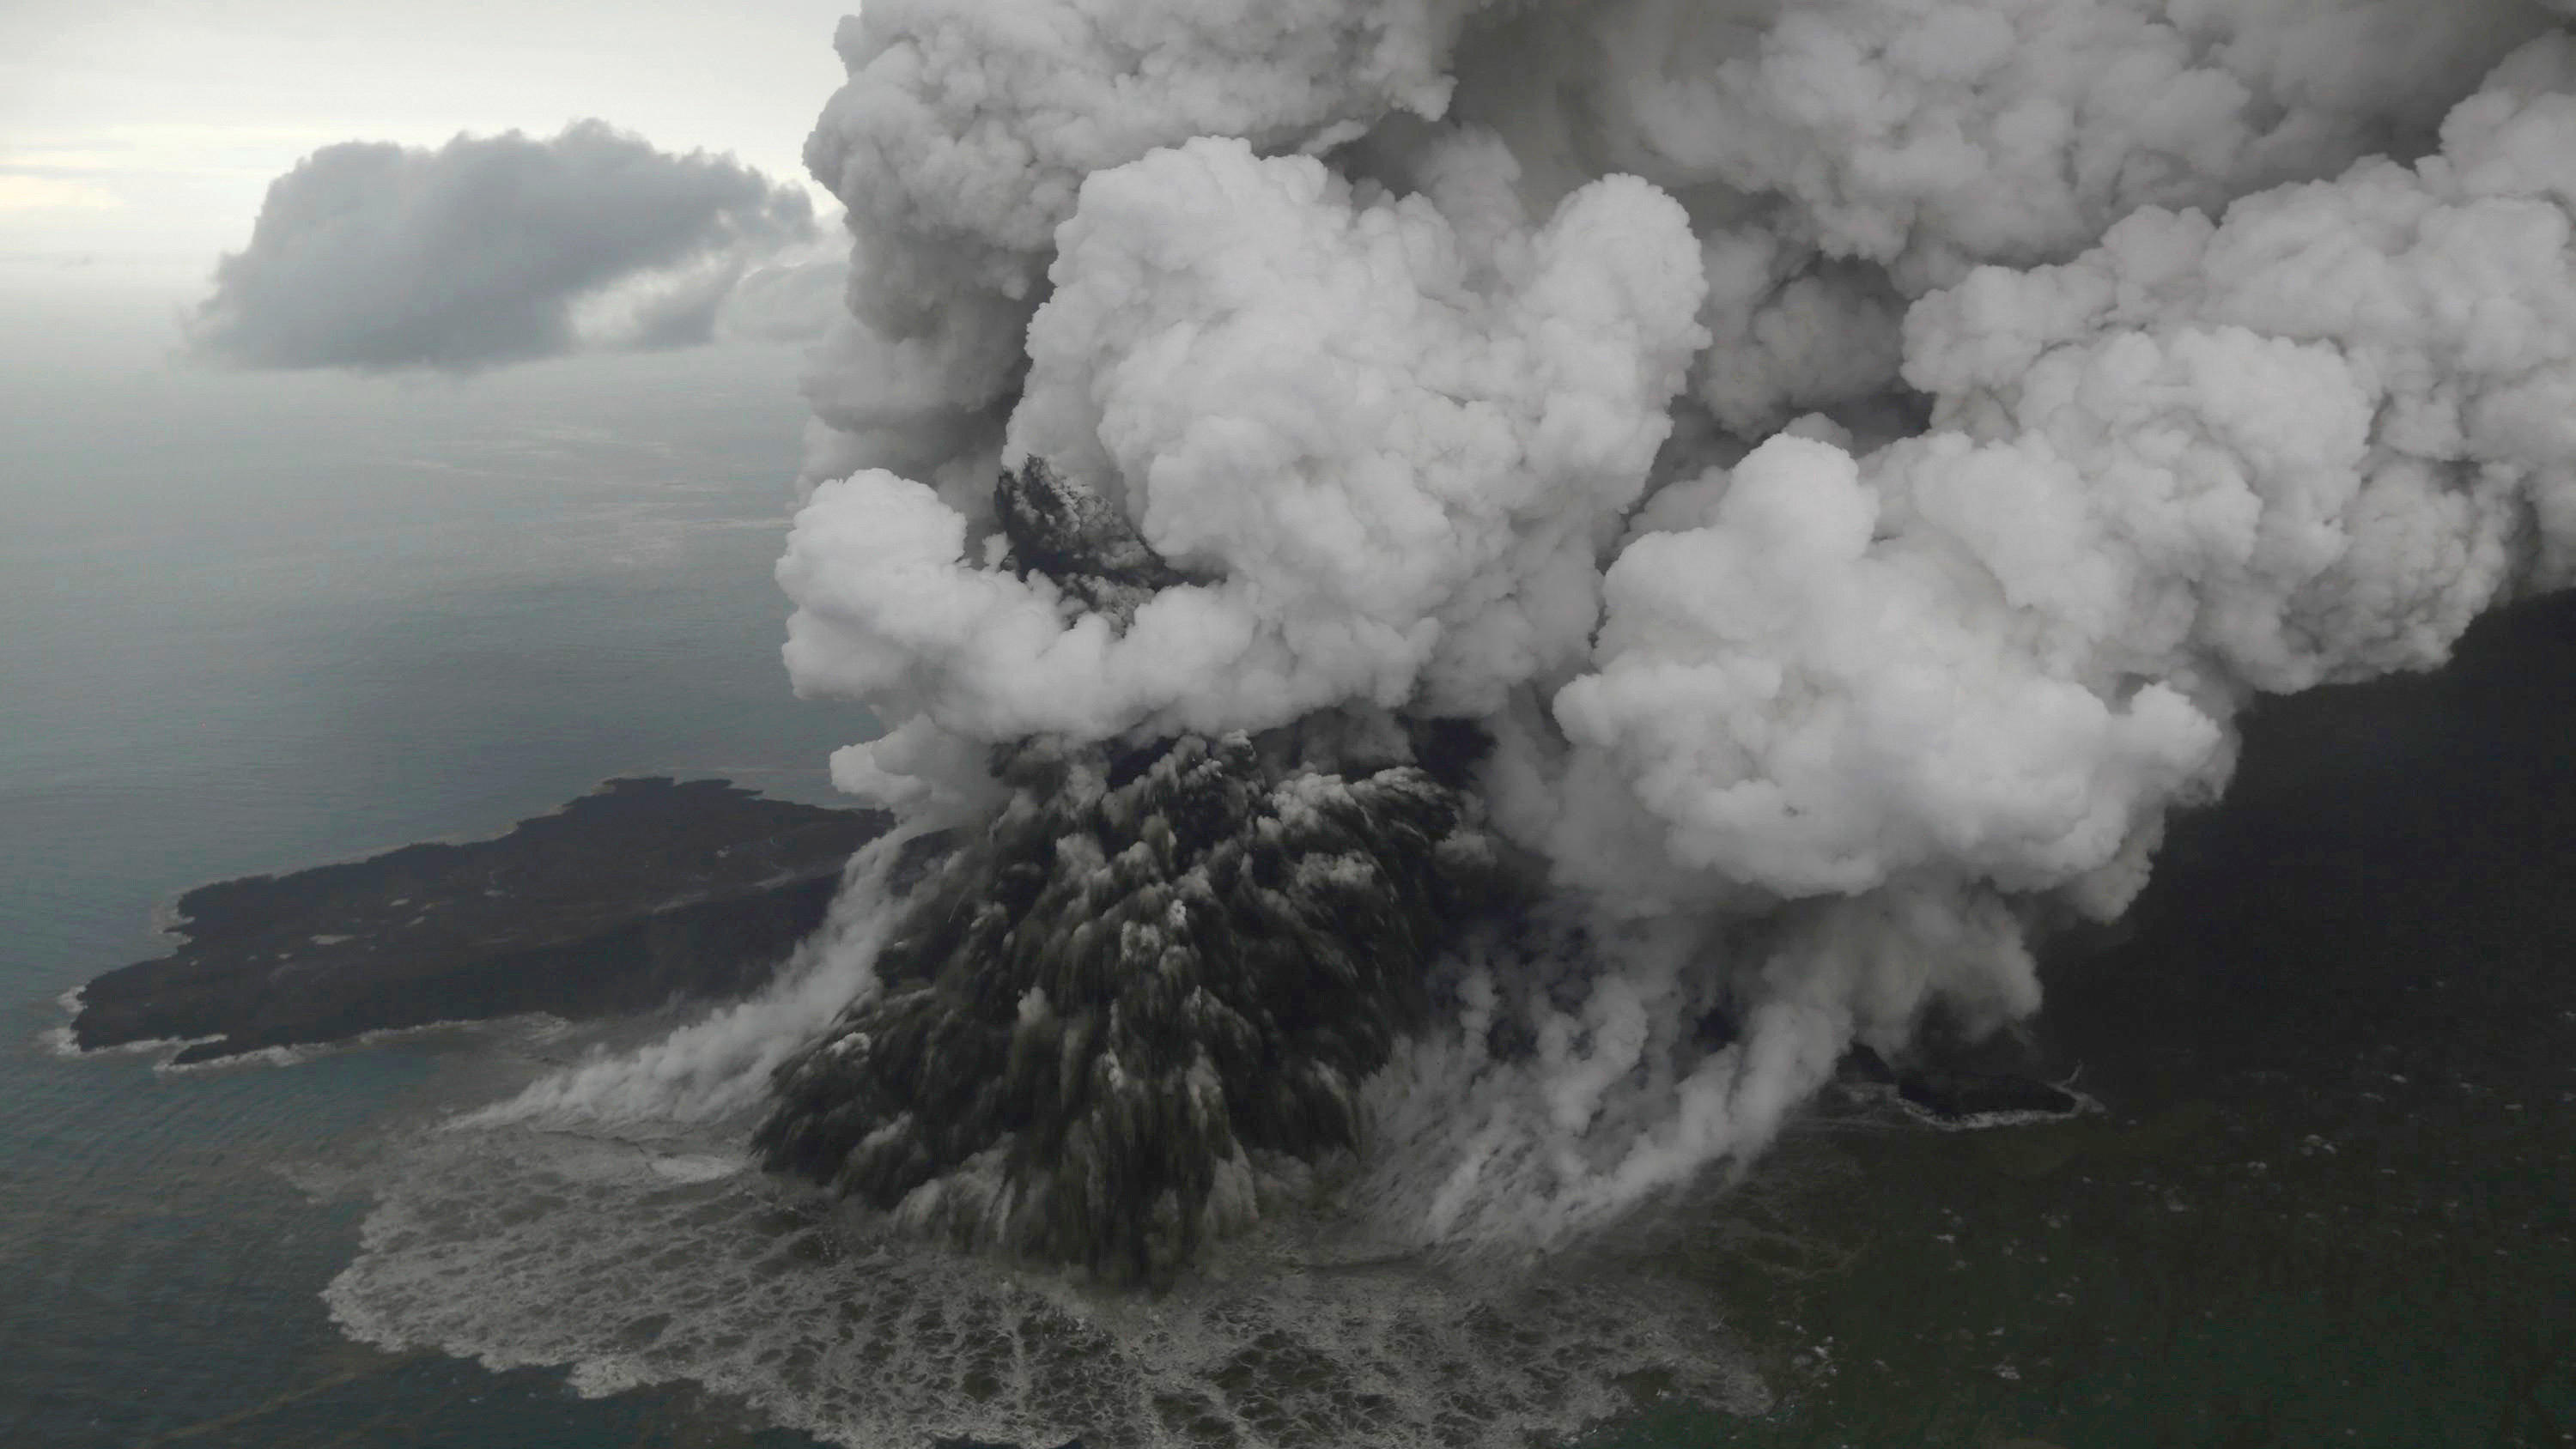 Diese Luftaufnahme zeigt vulkanisches Material, das aus dem Krater des Vulkans Anak Krakatau in der Sunda-Meerenge ausbricht